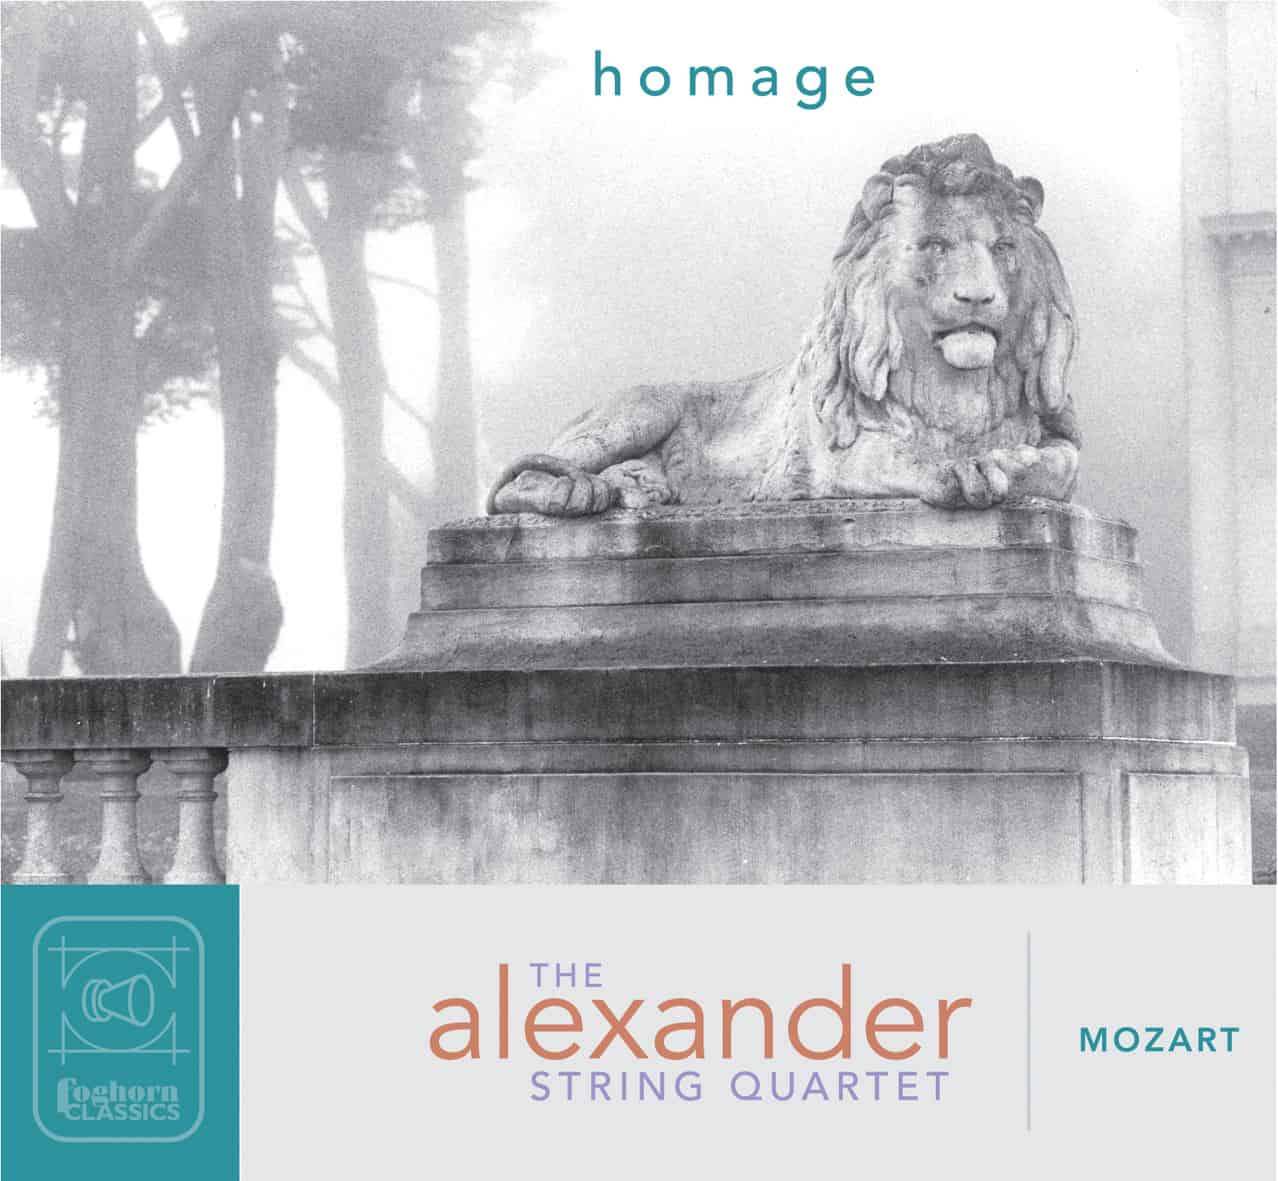 Alexander String Quartet - Mozart: Homage